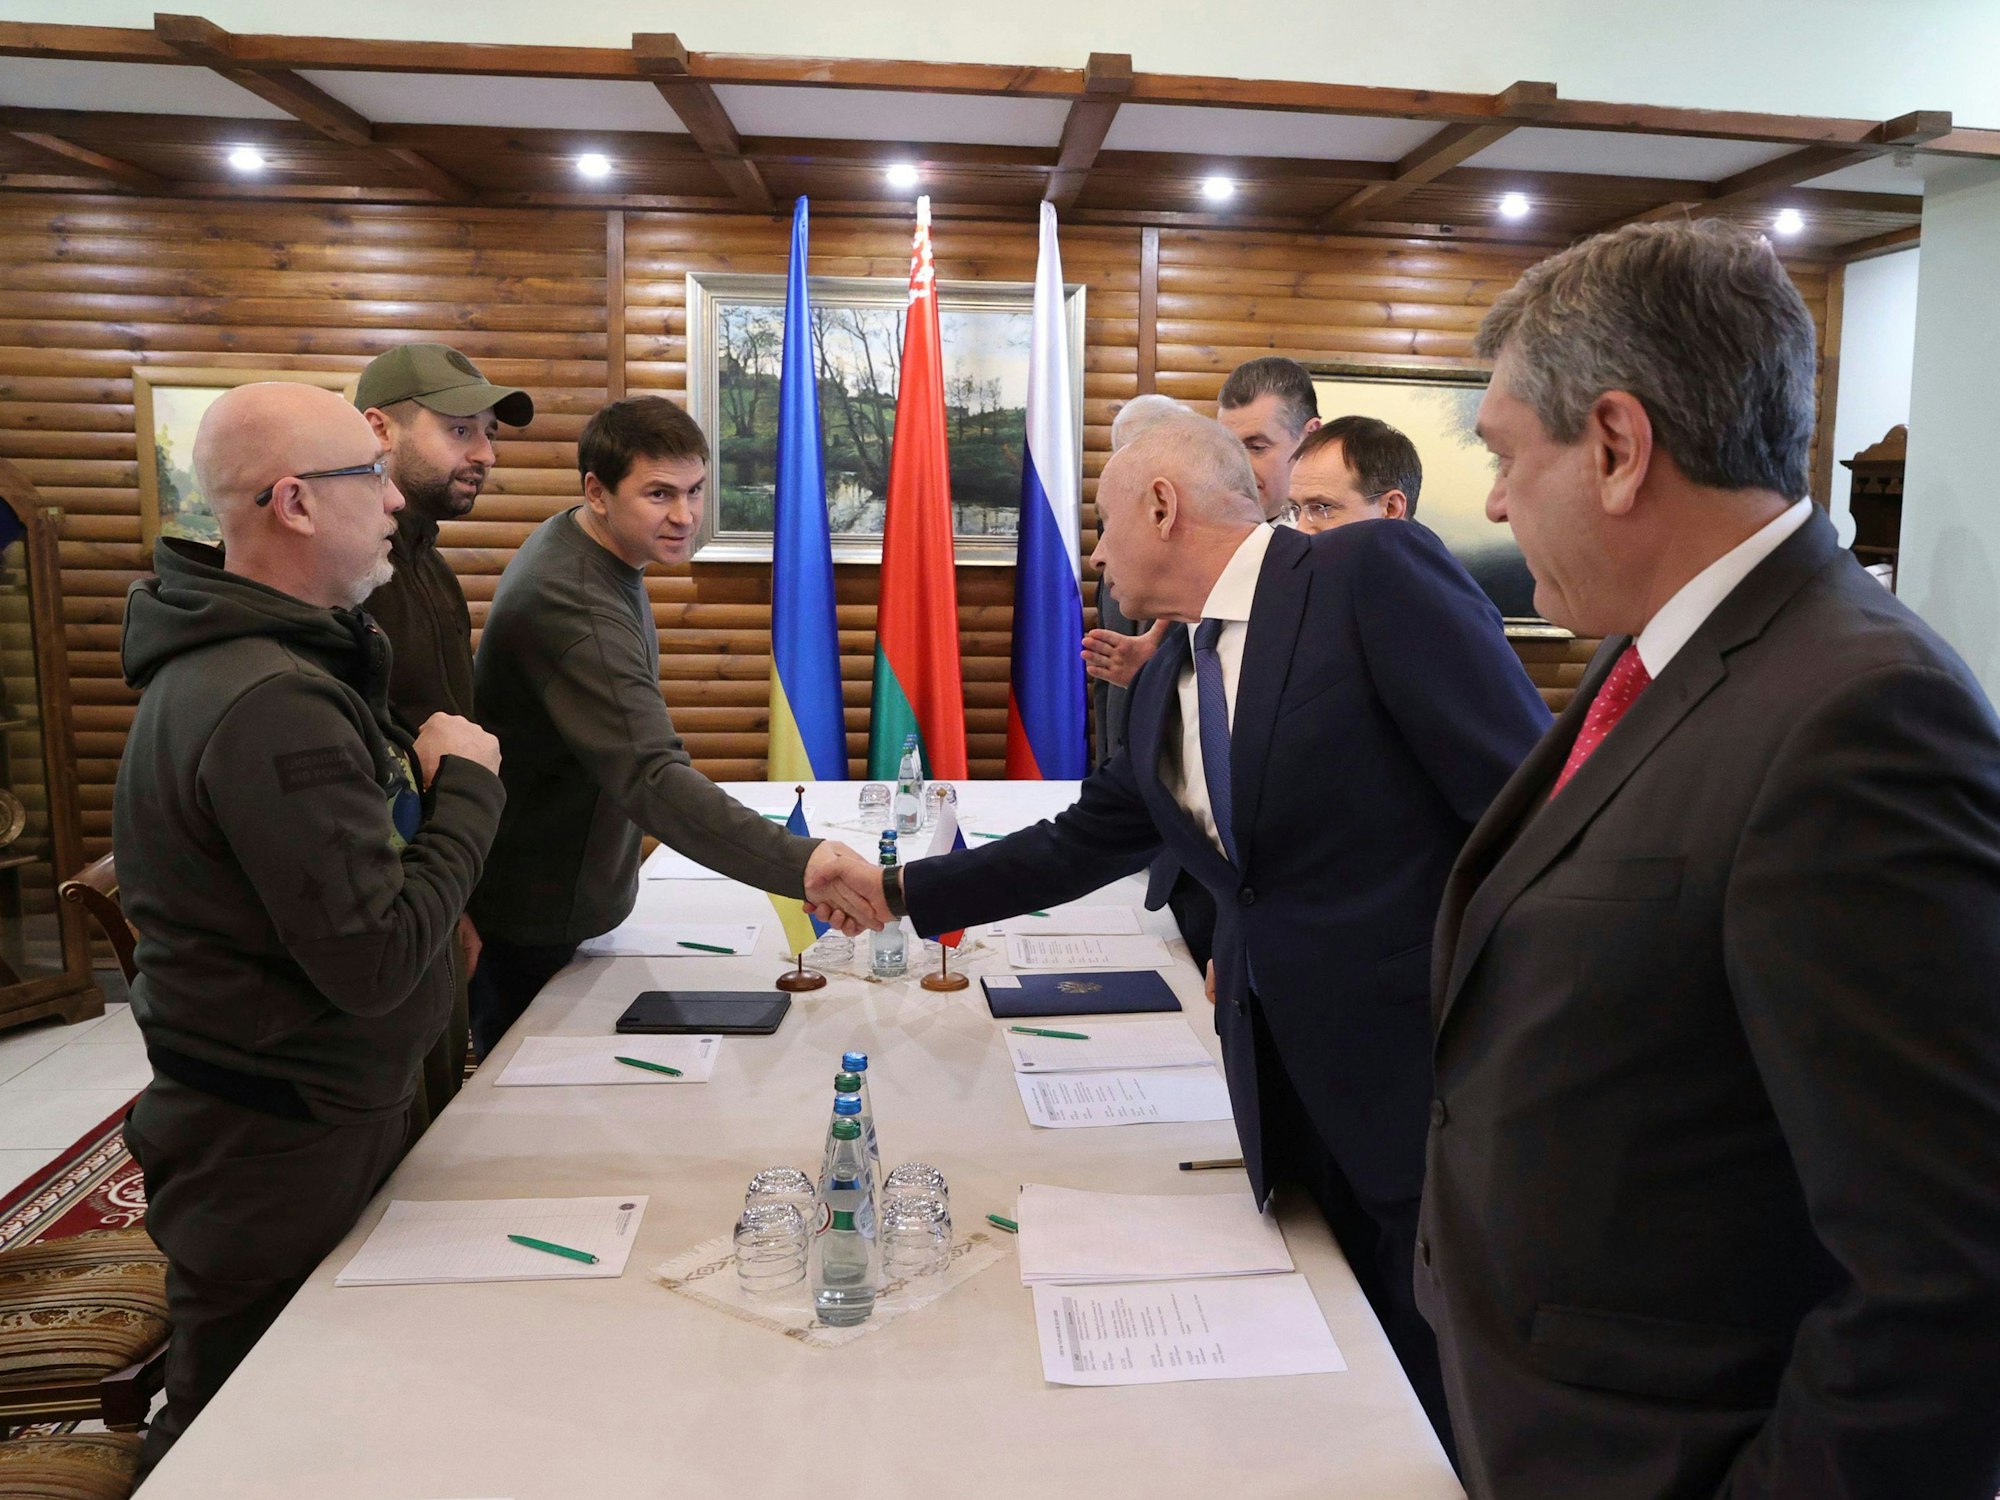 Das von der belarussischen Staatsagentur BelTA verbreitete und von AP zur Verfügung gestellte Bild zeigt die Delegation der Ukraine auf der einen Seite (links) und die Delegation aus Russland auf der anderen. Die Teilnehmer begrüßen sich vor der zweiten Gesprächsrunde.